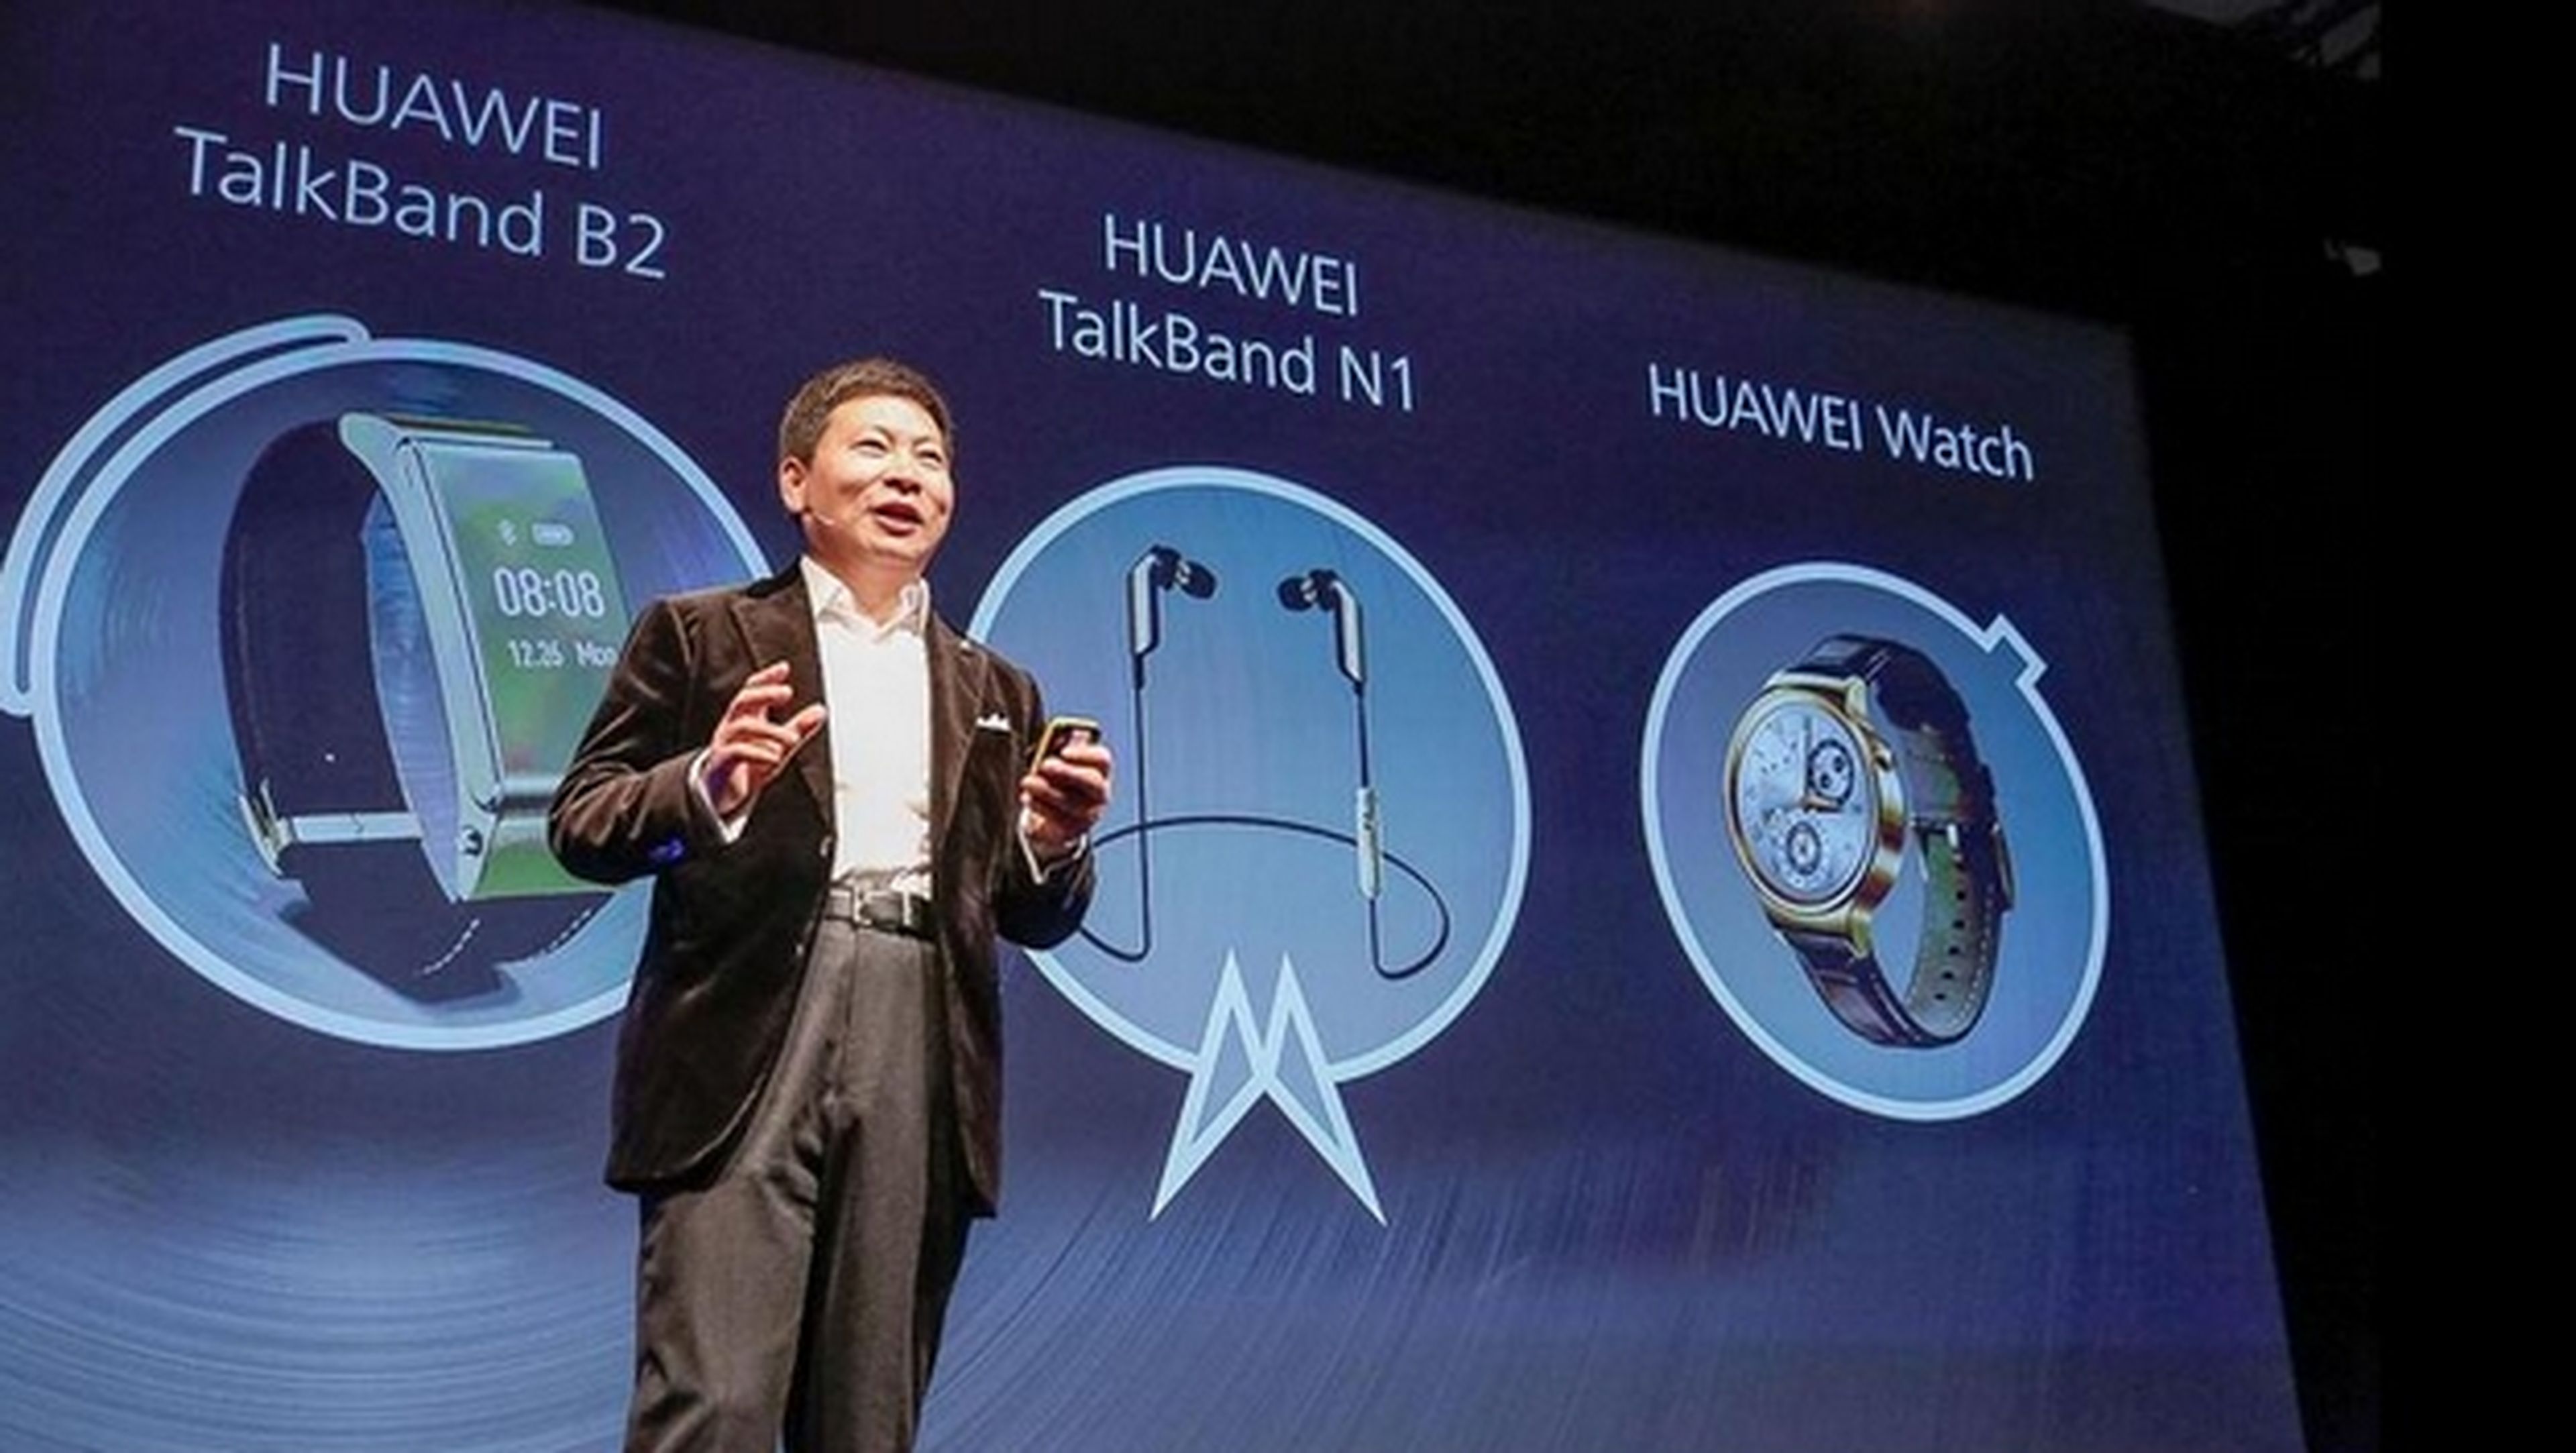 Presentación Huawei Watch, Talkband B2 y N1 en el MWC 2015.